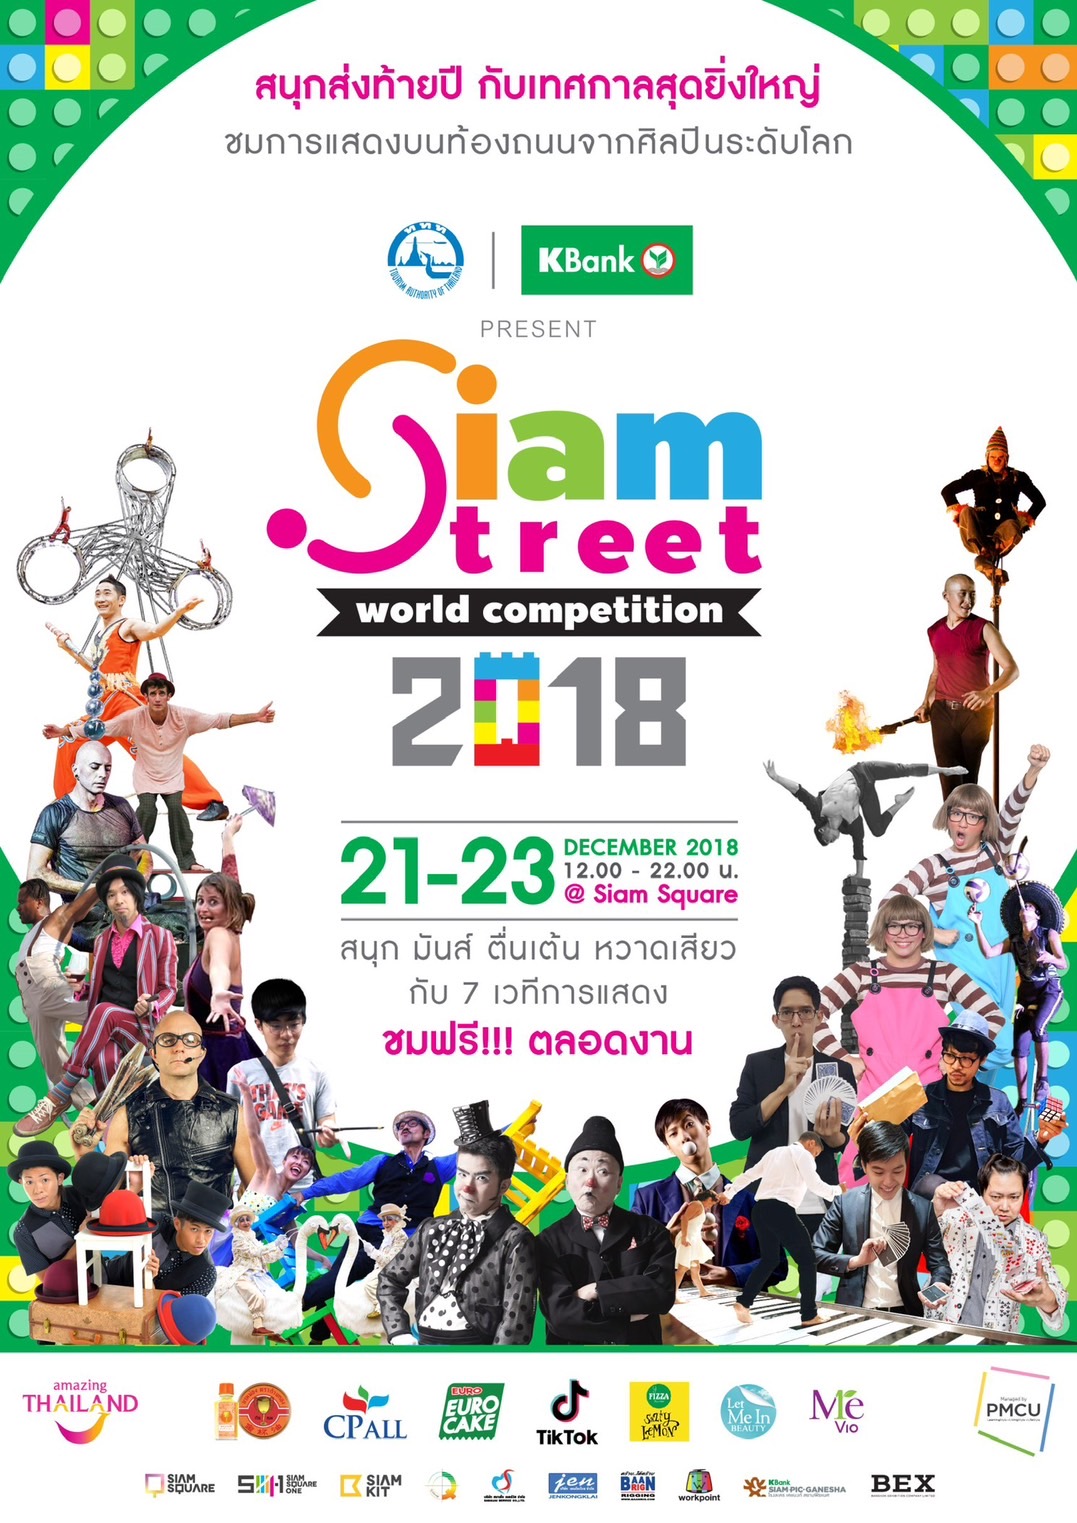 มายากล Street Performance World Siam Street Festival Siam Sqaure Siam Paragon Workpoint Entertainment BEX VK.Vich Vichayut Kanungchoti วิชยุตม์ คนึงโชติ มายากล รับแสดงมายากล Magic Class รับสอนมายากล มายากลเวที การแสดง Stage Magic แสดงวันเด็ก วันปีใหม่